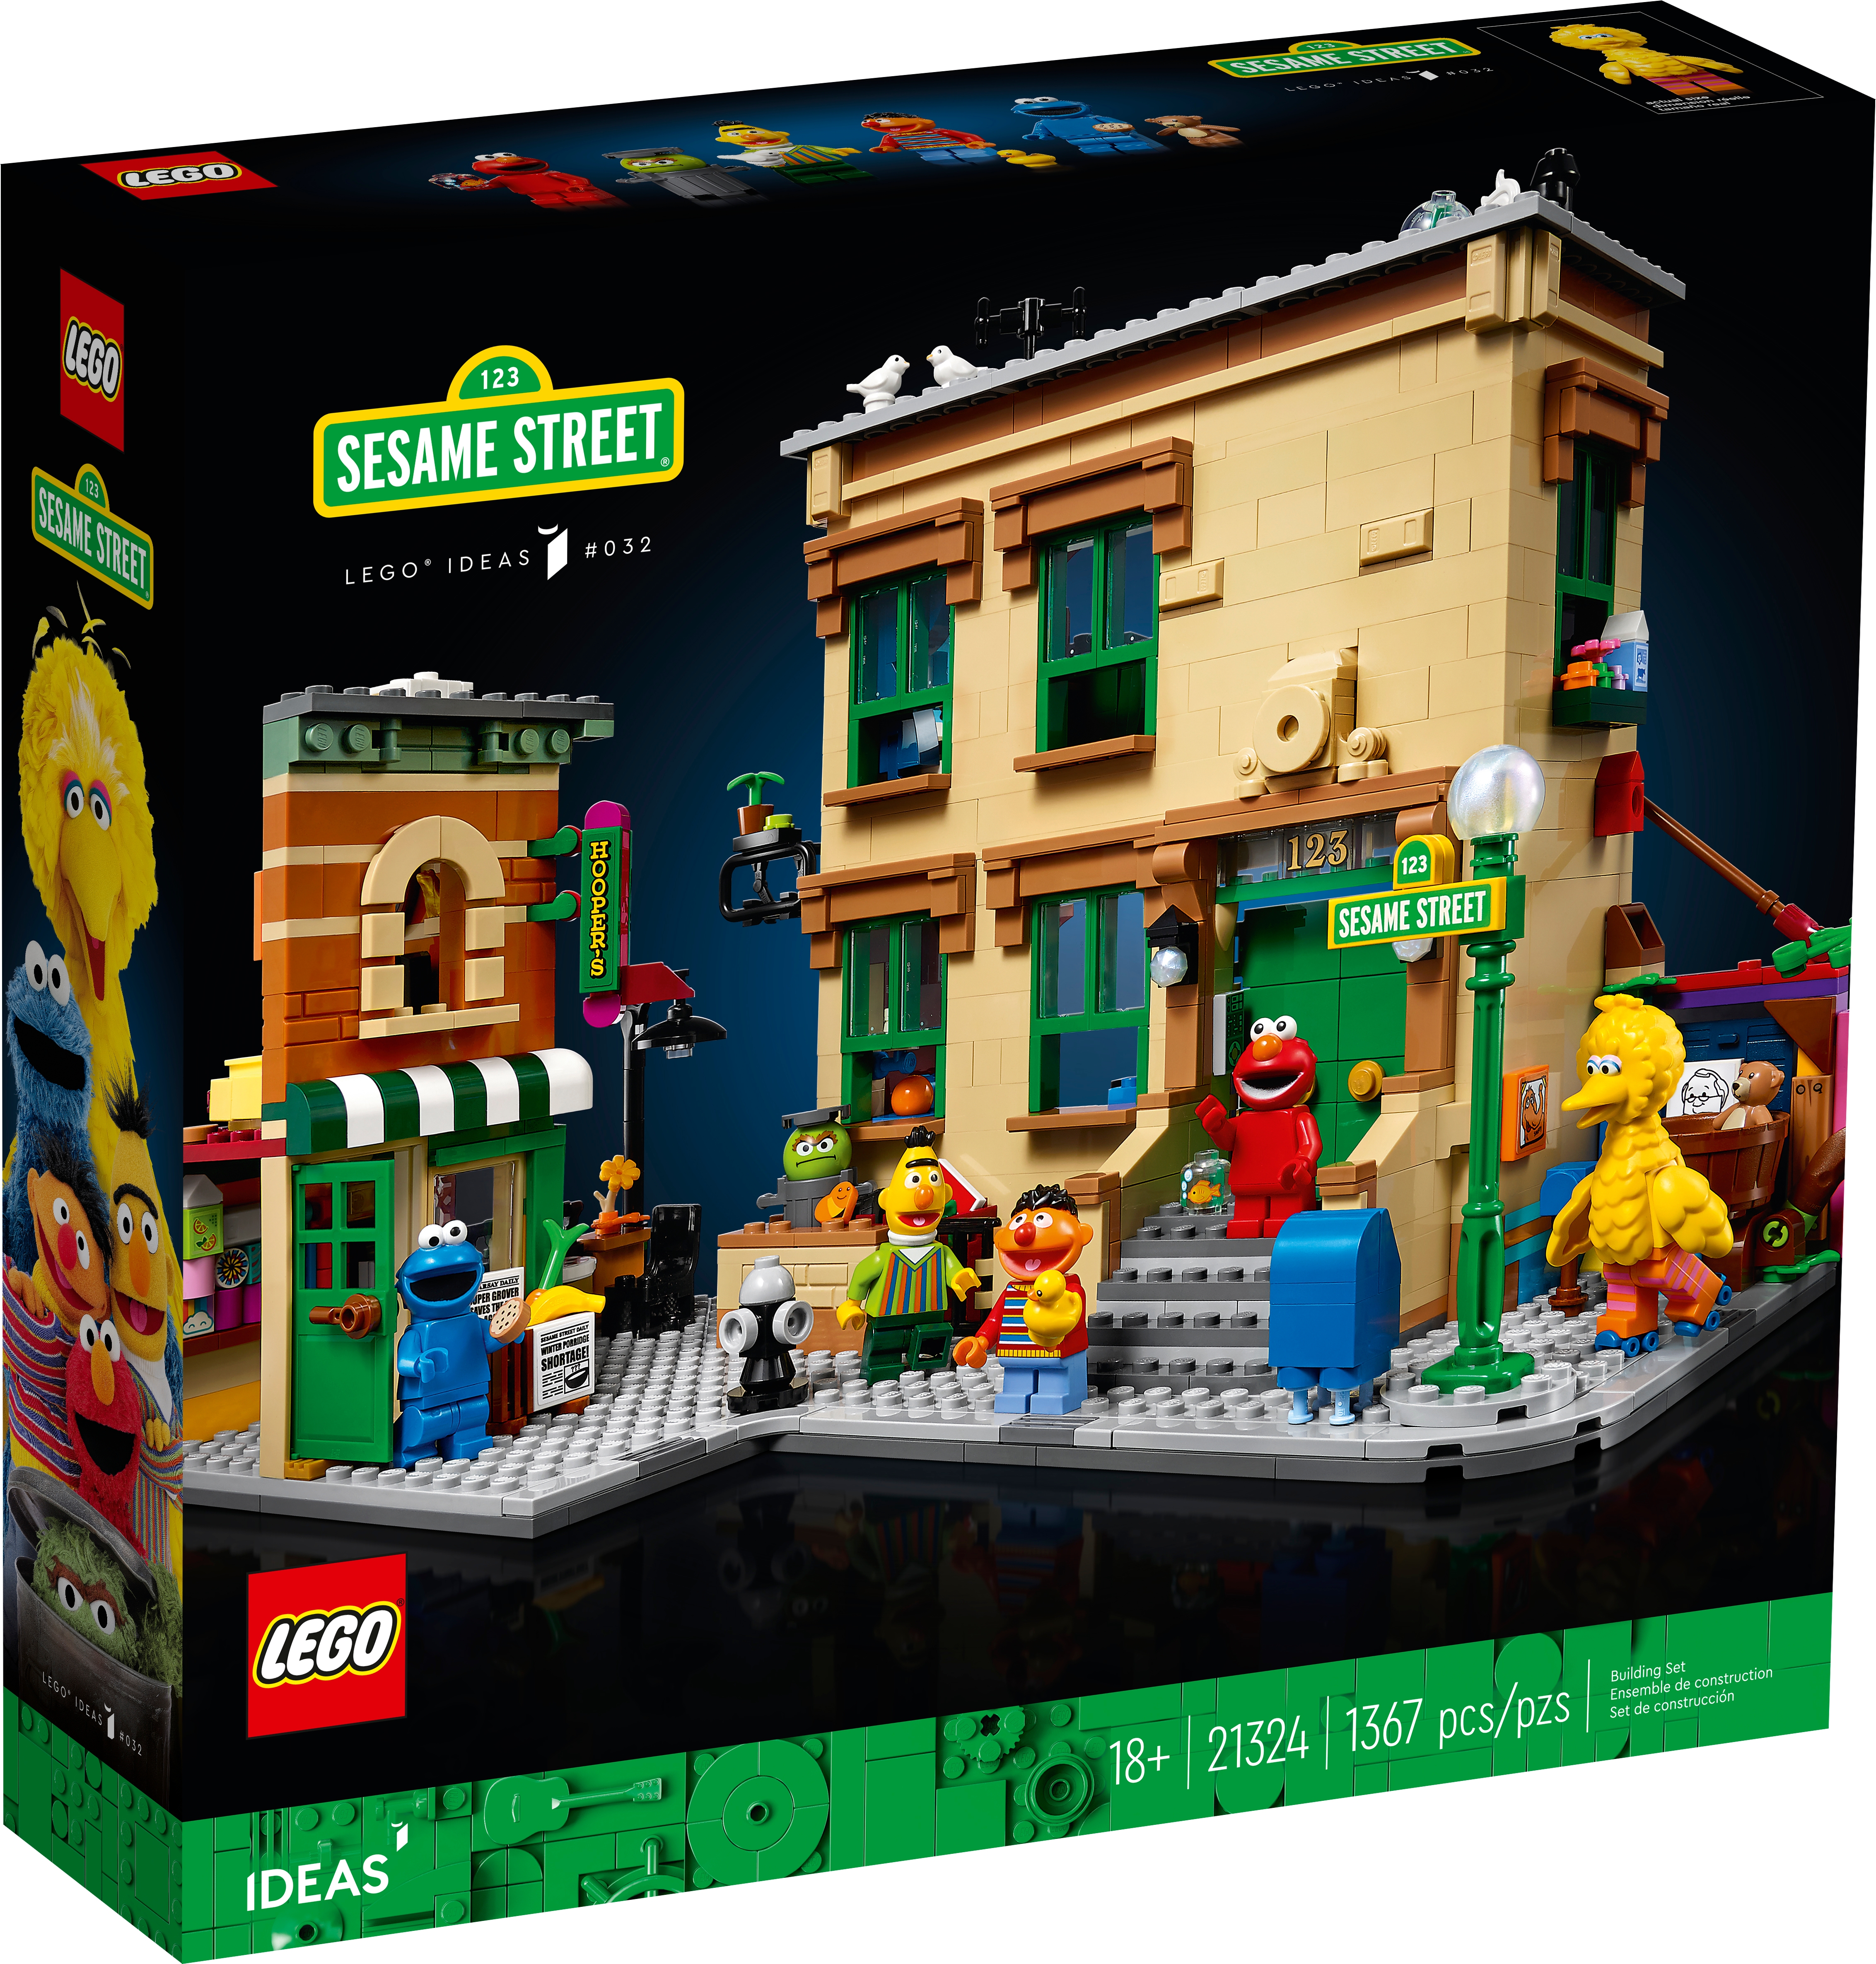 Naschrift Dank u voor uw hulp lezer 123 Sesame Street 21324 | Ideas | Buy online at the Official LEGO® Shop US